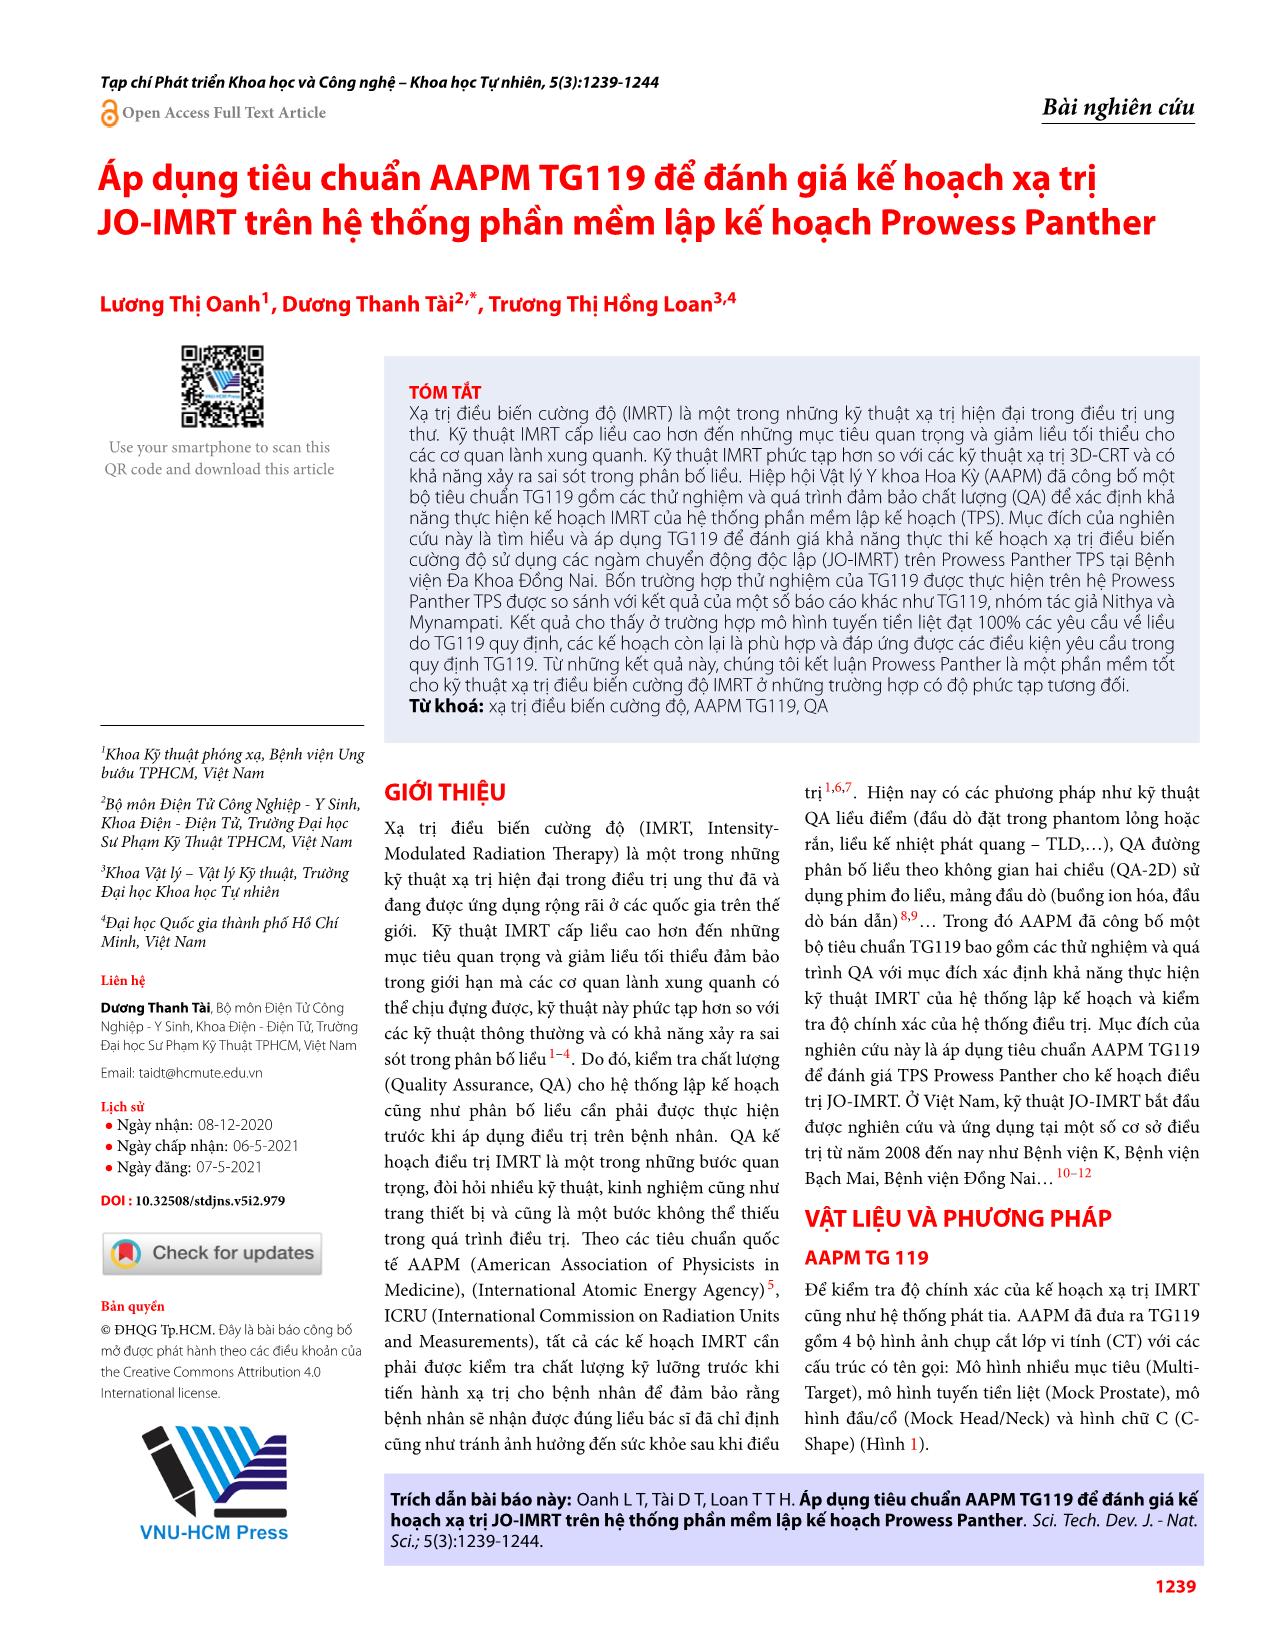 Áp dụng tiêu chuẩn AAPM TG119 để đánh giá kế hoạch xạ trị JO-IMRT trên hệ thống phần mềm lập kế hoạch Prowess Panther trang 1